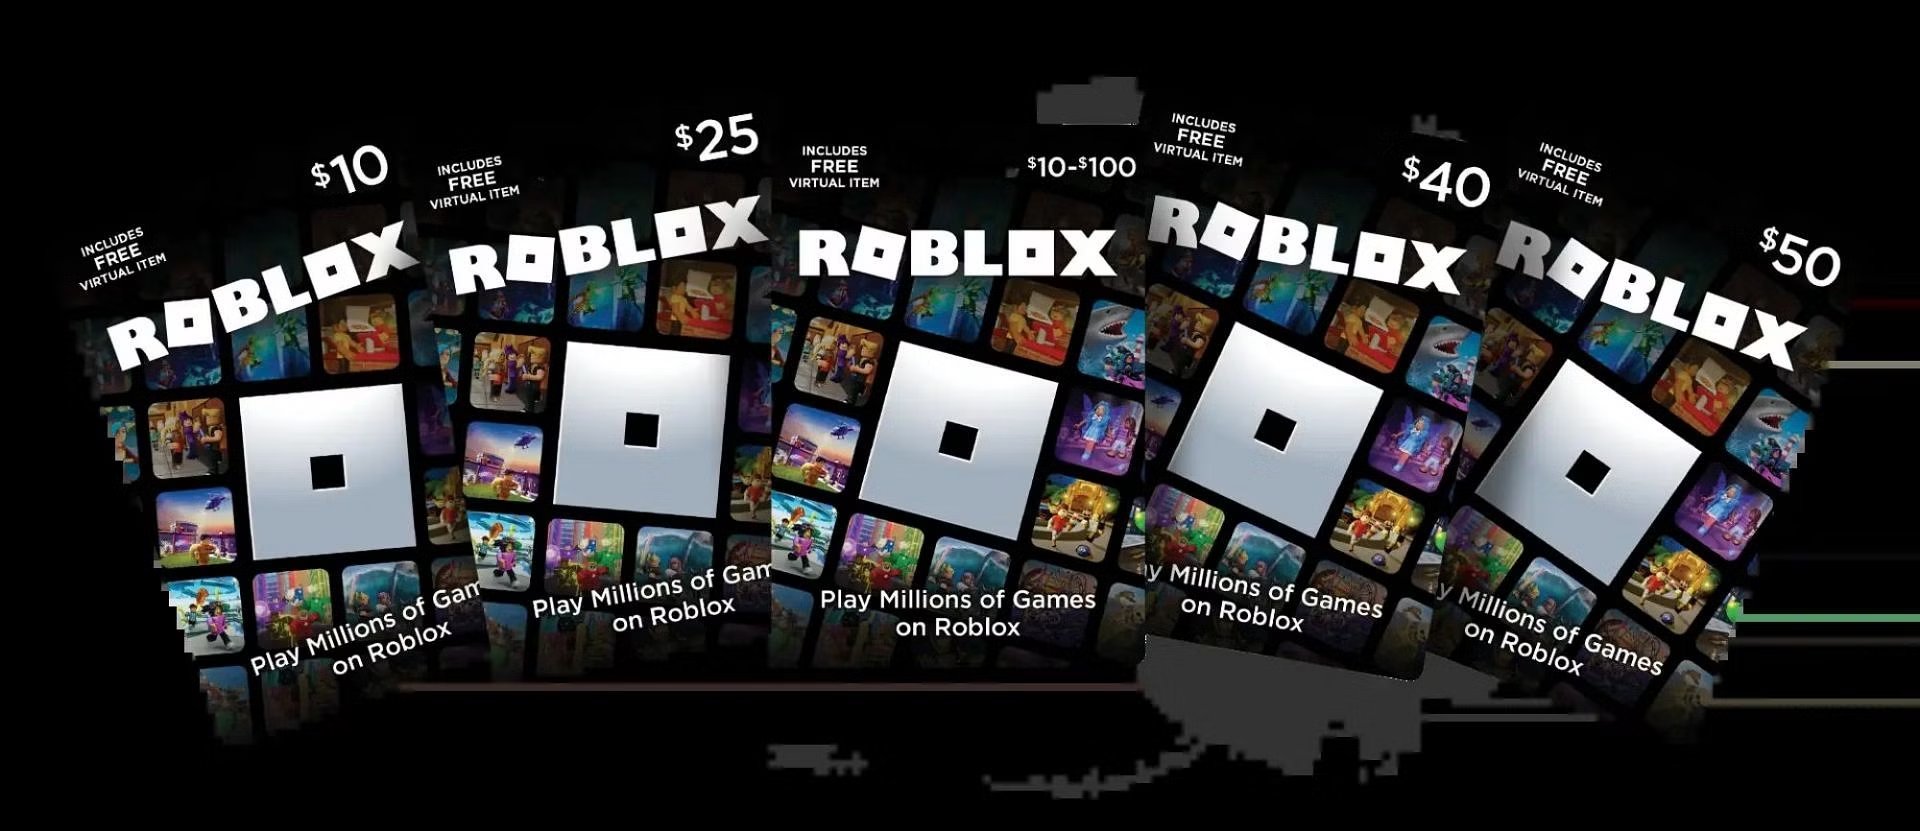 Roblox on X: Lets GOOOOOOOOOOOOOOO Free 1700 #robux 1️⃣ Like